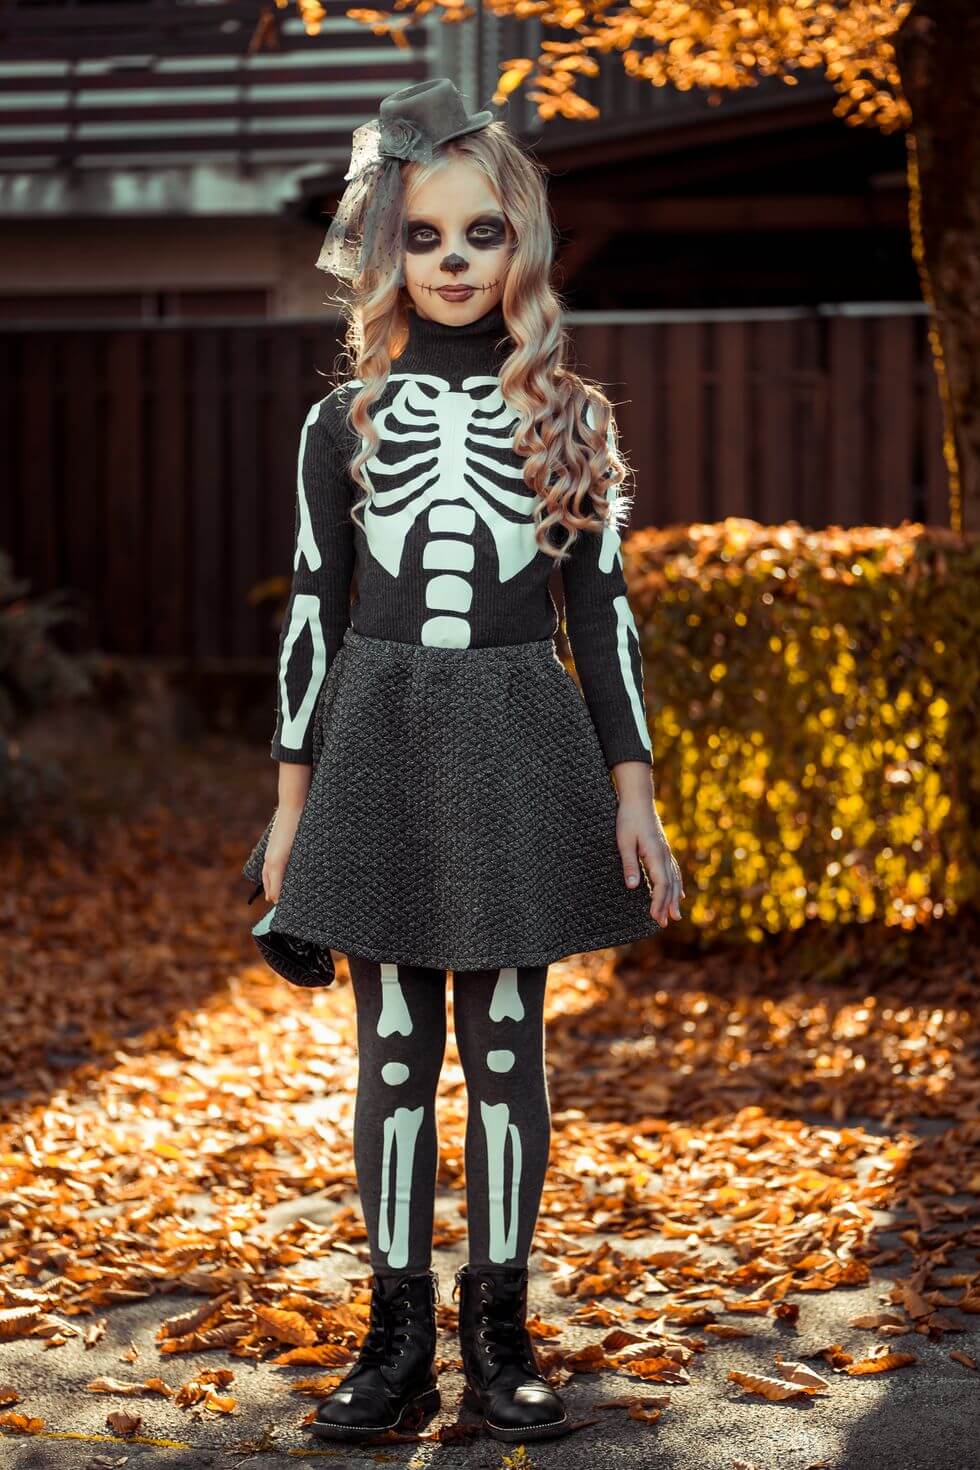 Cute Skeleton Costume Idea For Girls Skeleton Costume Ideas For Halloween